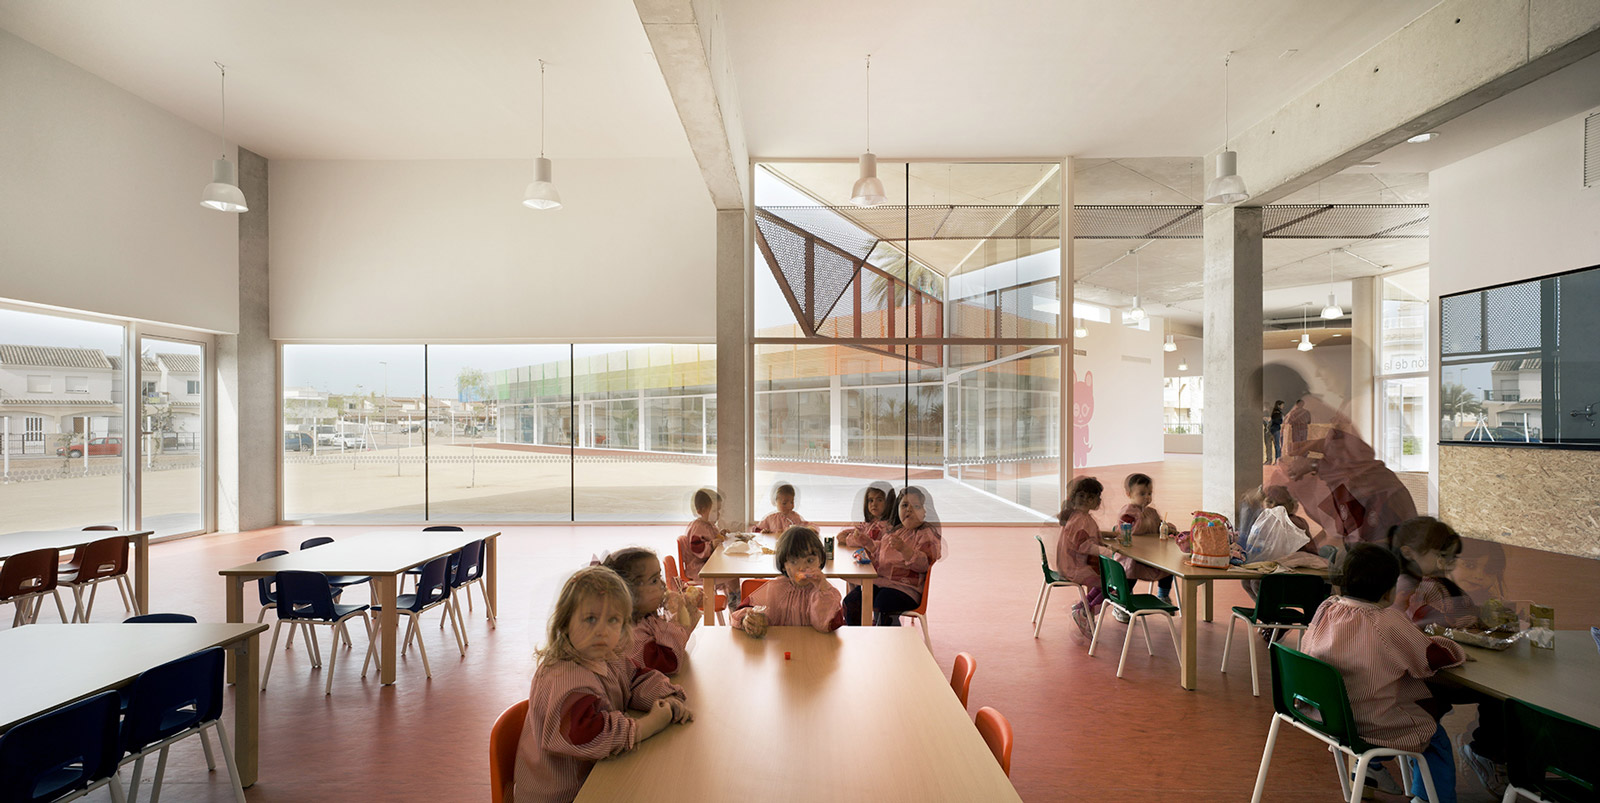 Escuela infantil y guardería entre palmeras  Nursery school and kindergarten Palm trees